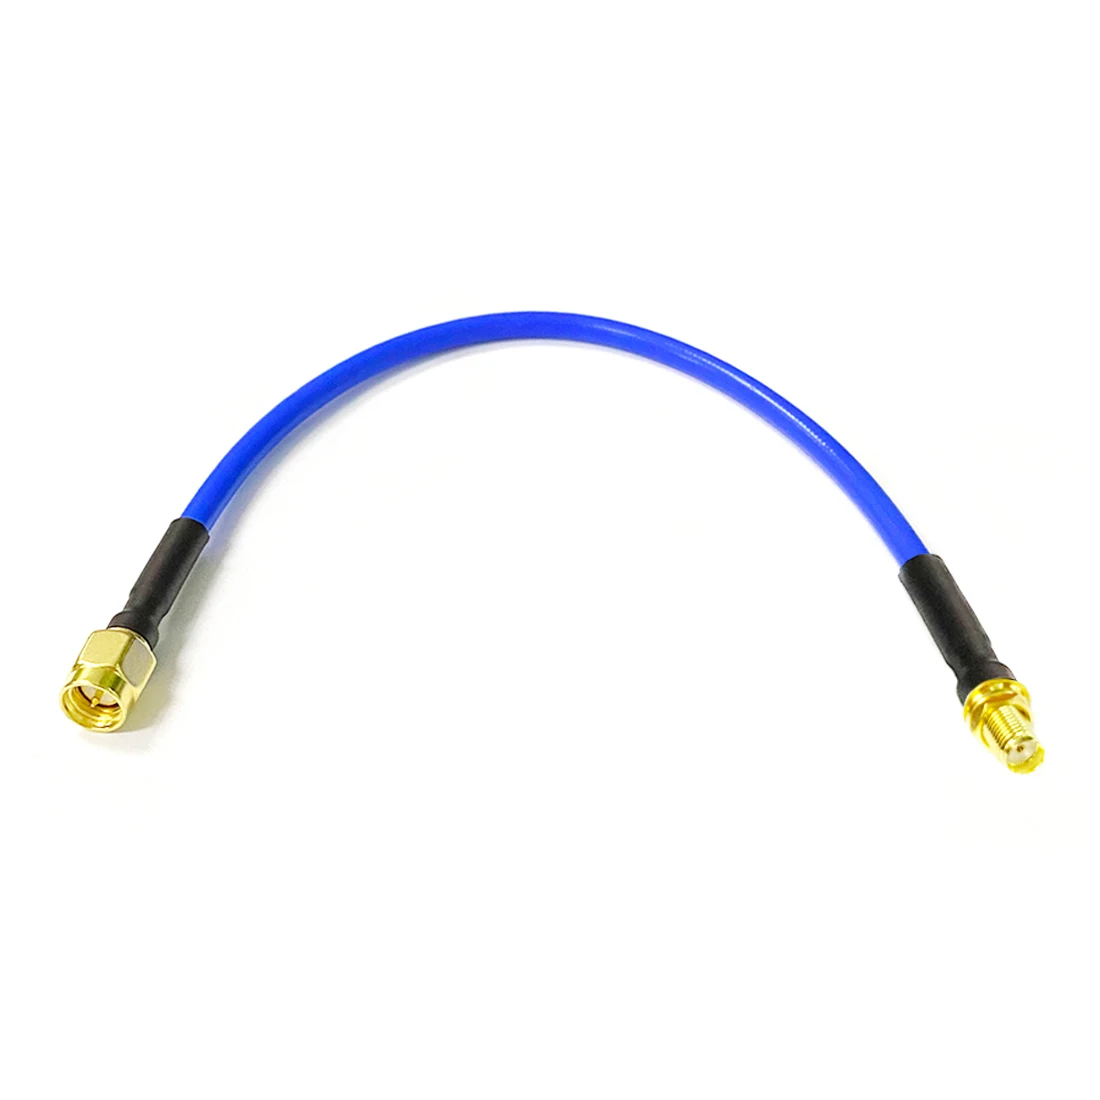 

Полугибкий коаксиальный кабель с разъемом SMA типа штекер-гнездо RG402, 0,141 дюйма, 50 ом, синяя оболочка, 20 см/30 см/50 см/100 см